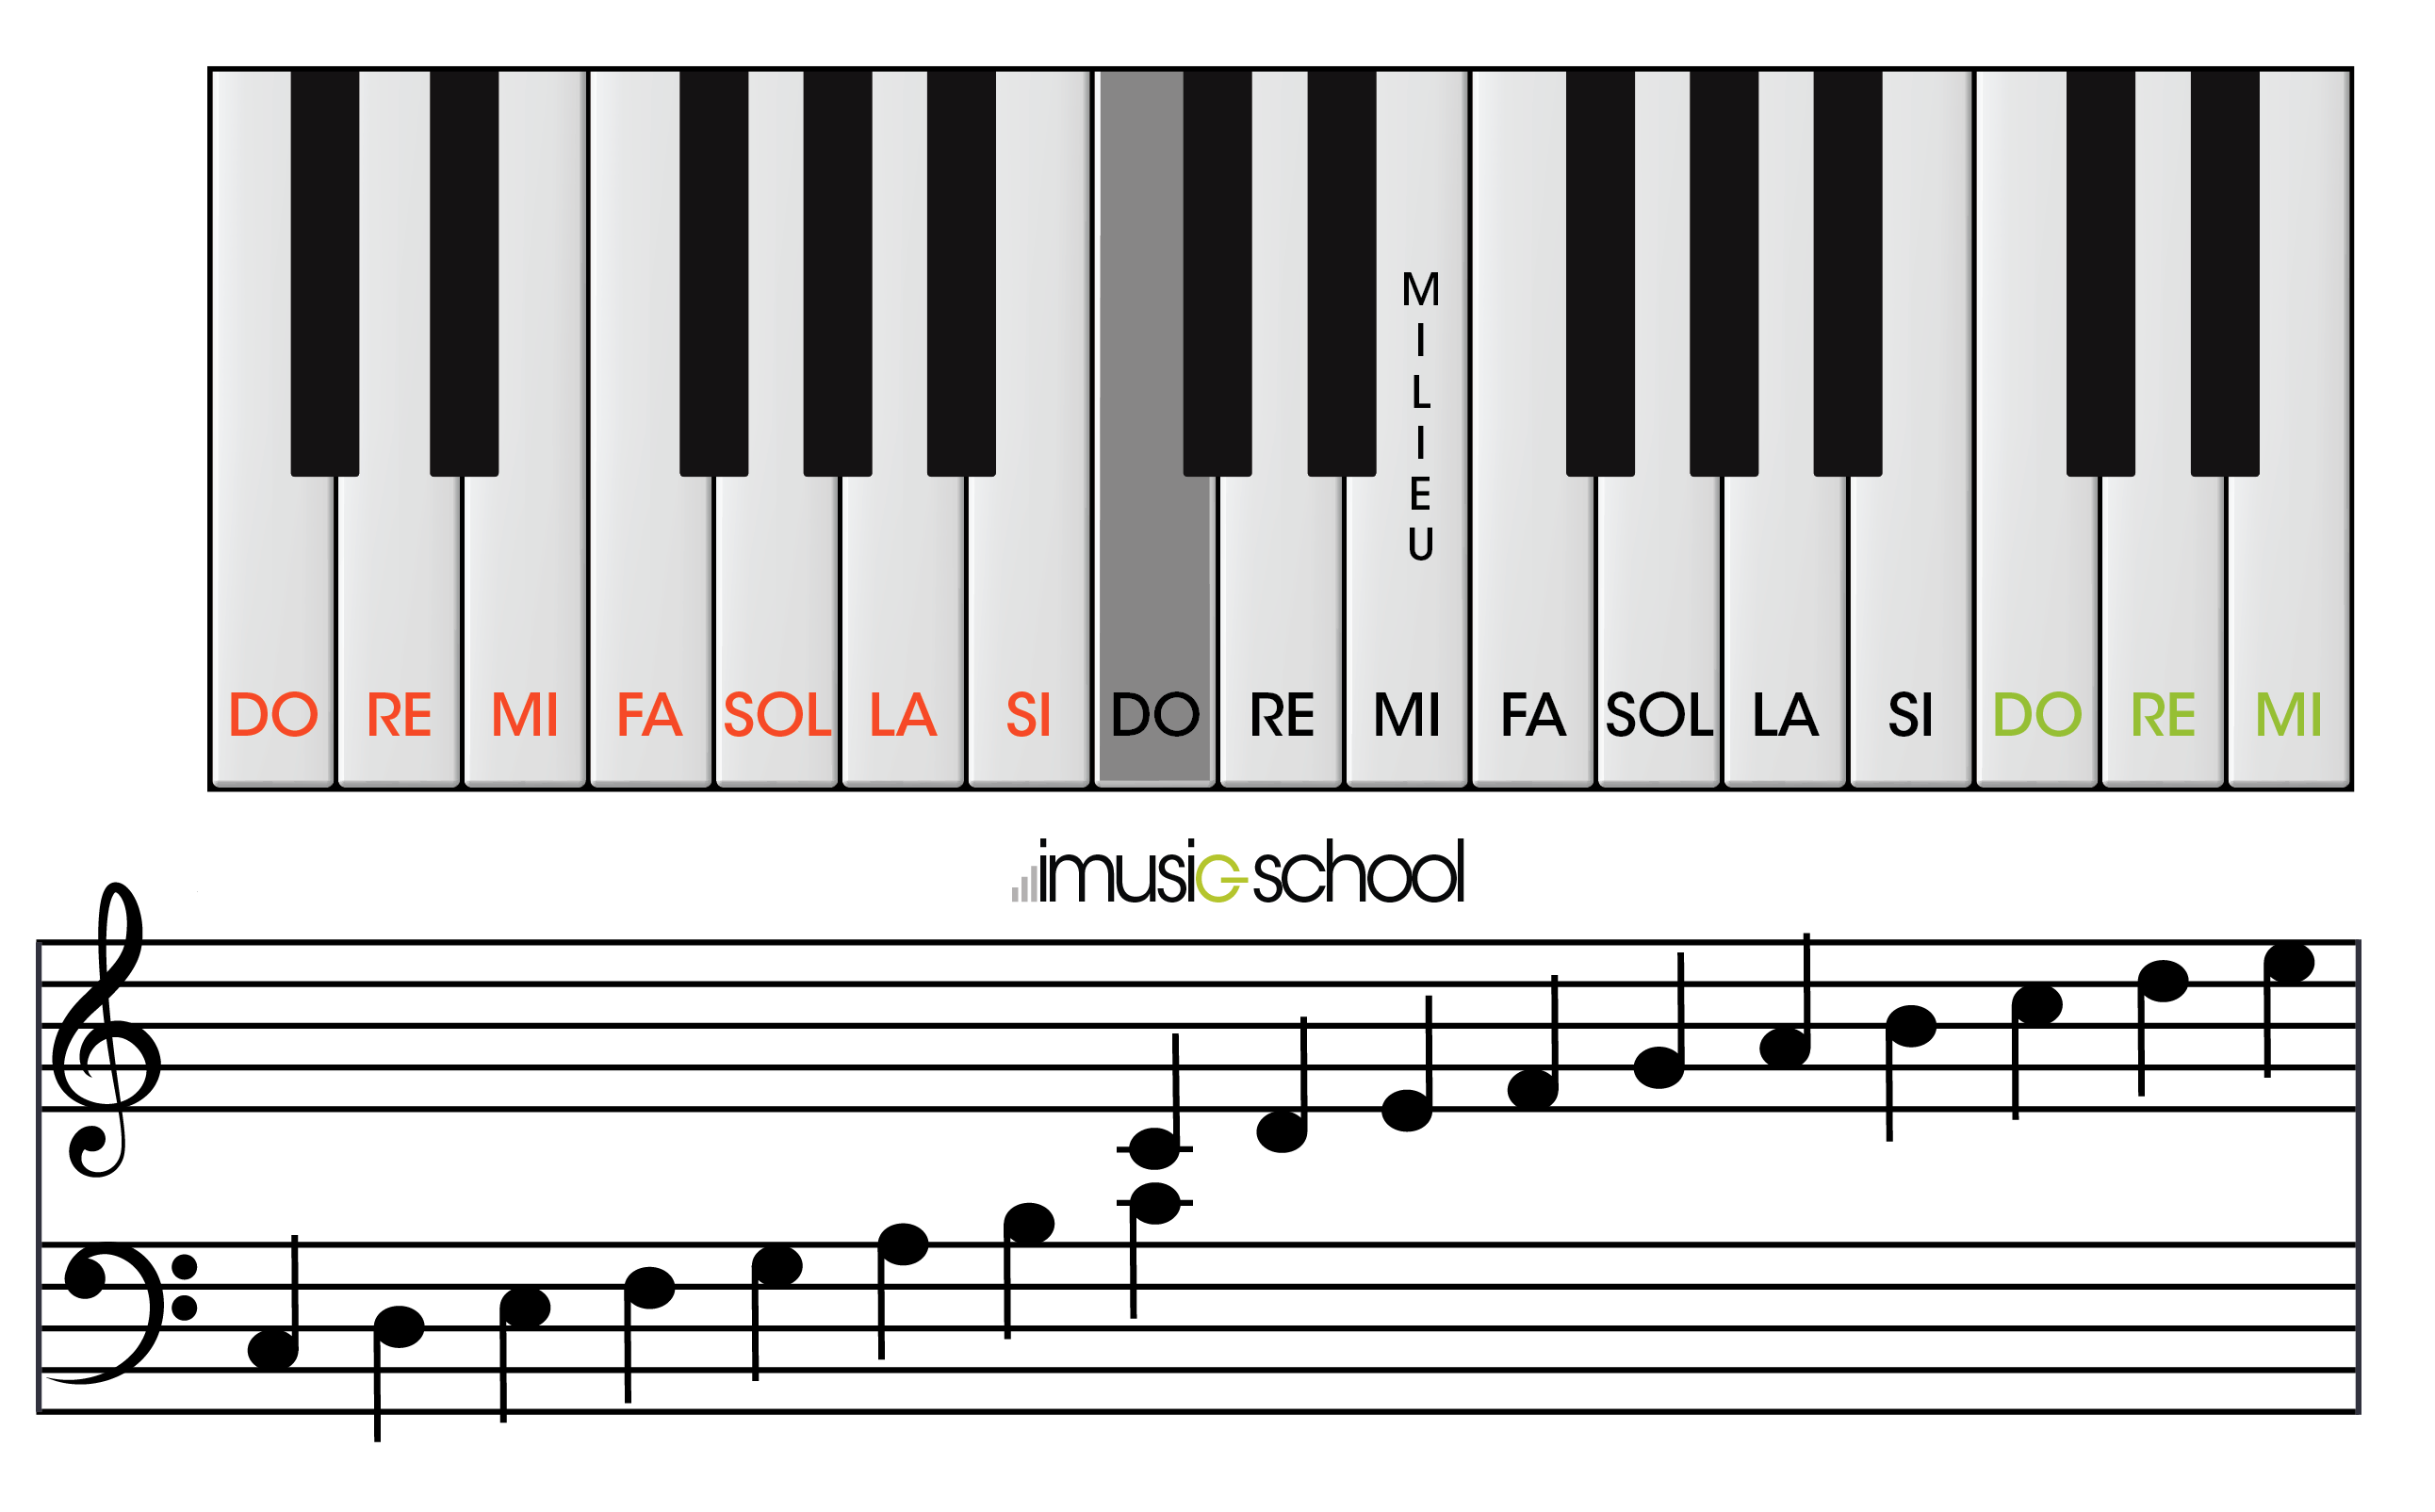 Little Piano - Crie músicas usando um teclado virtual